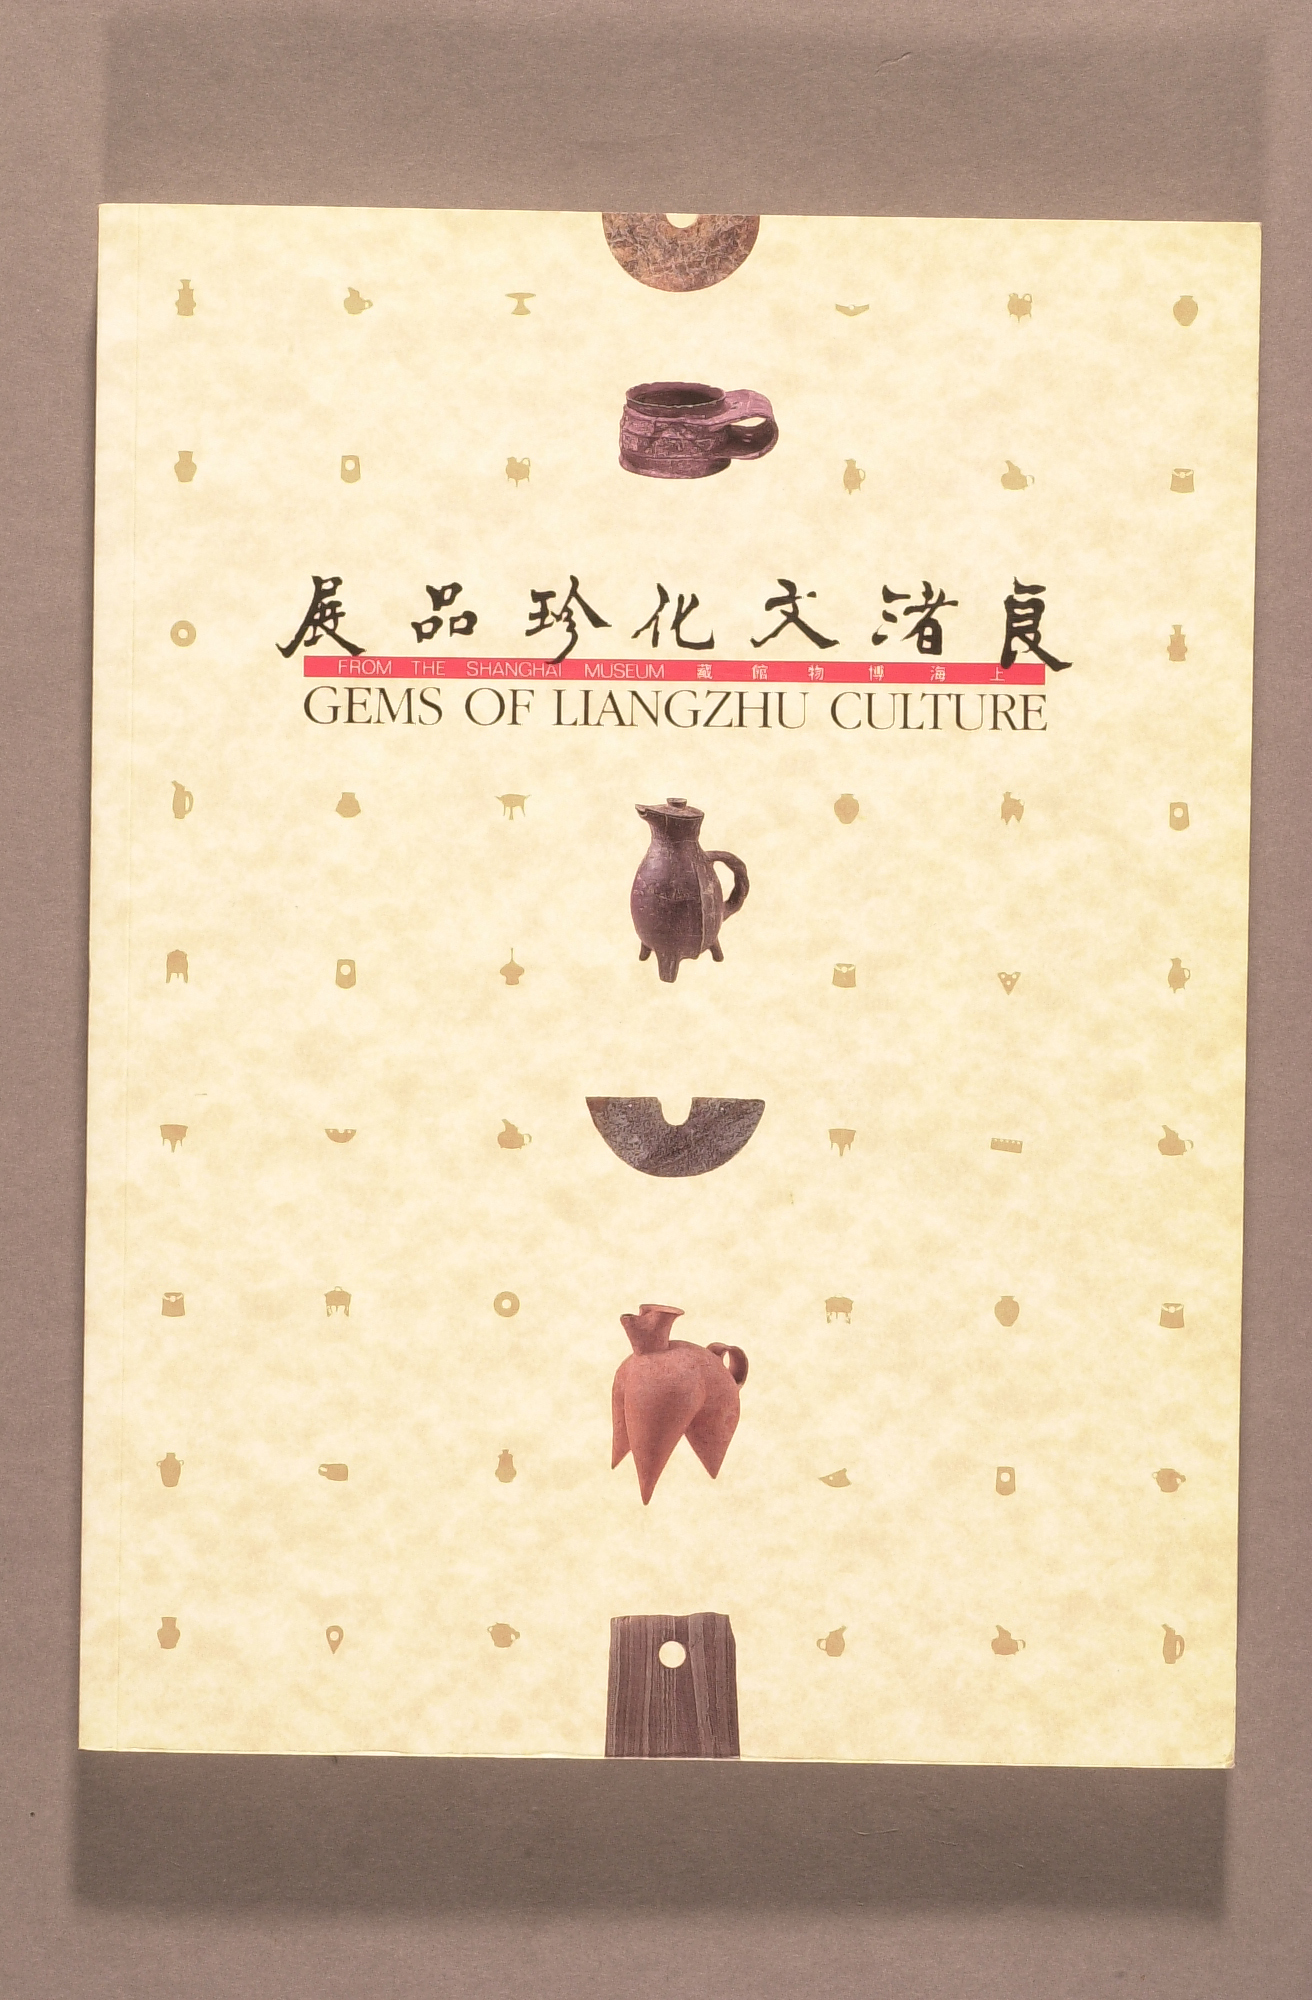 上海博物館藏良渚文化珍品展